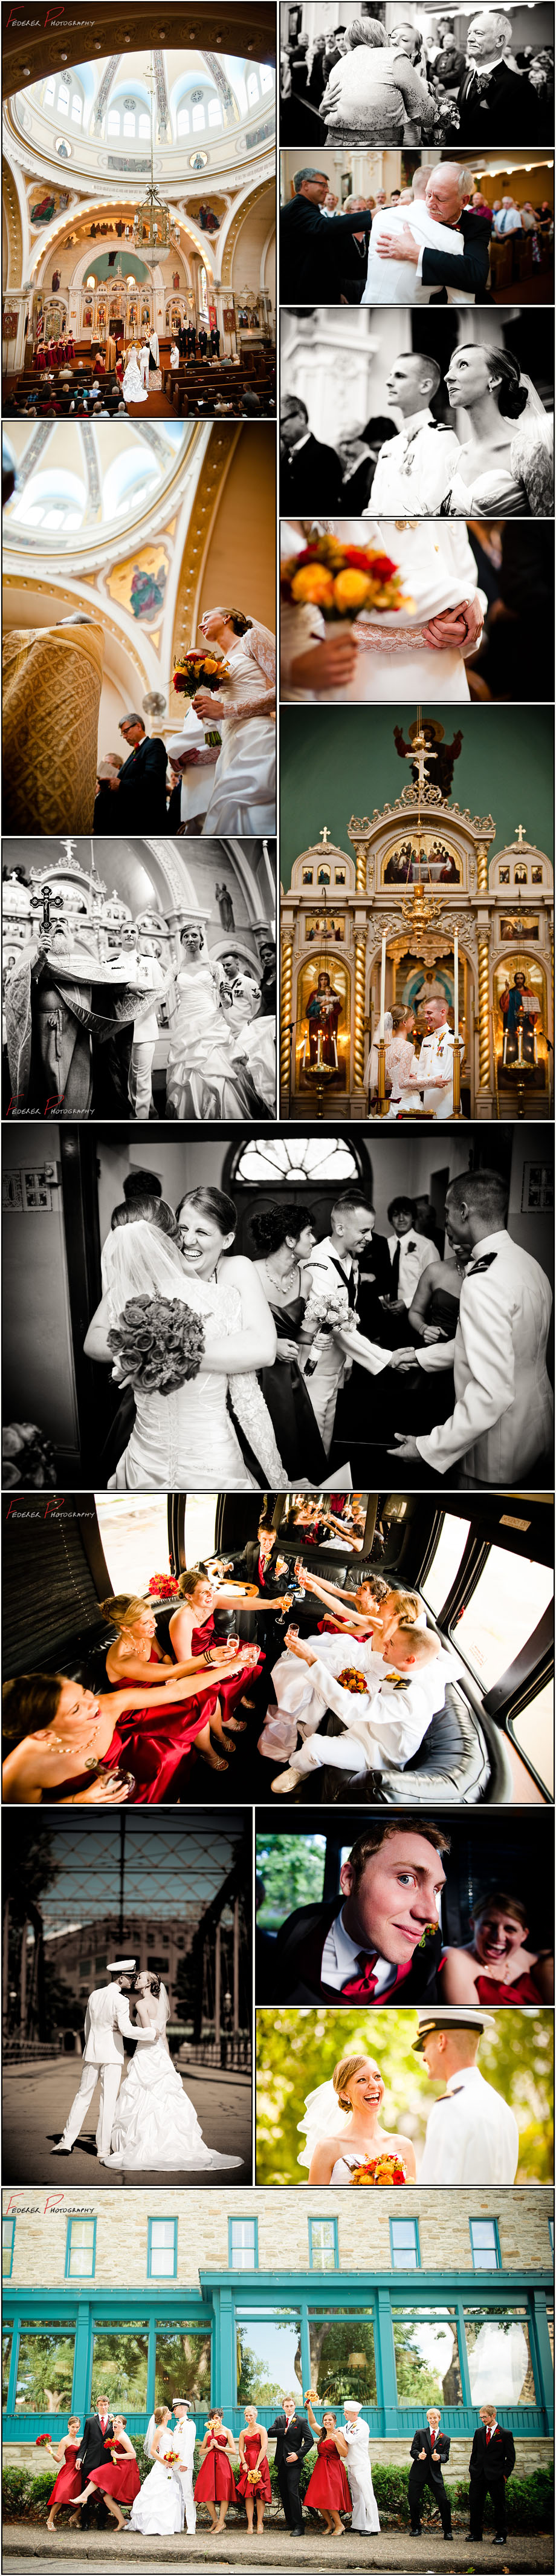 Professional Wedding Photographers Photographs